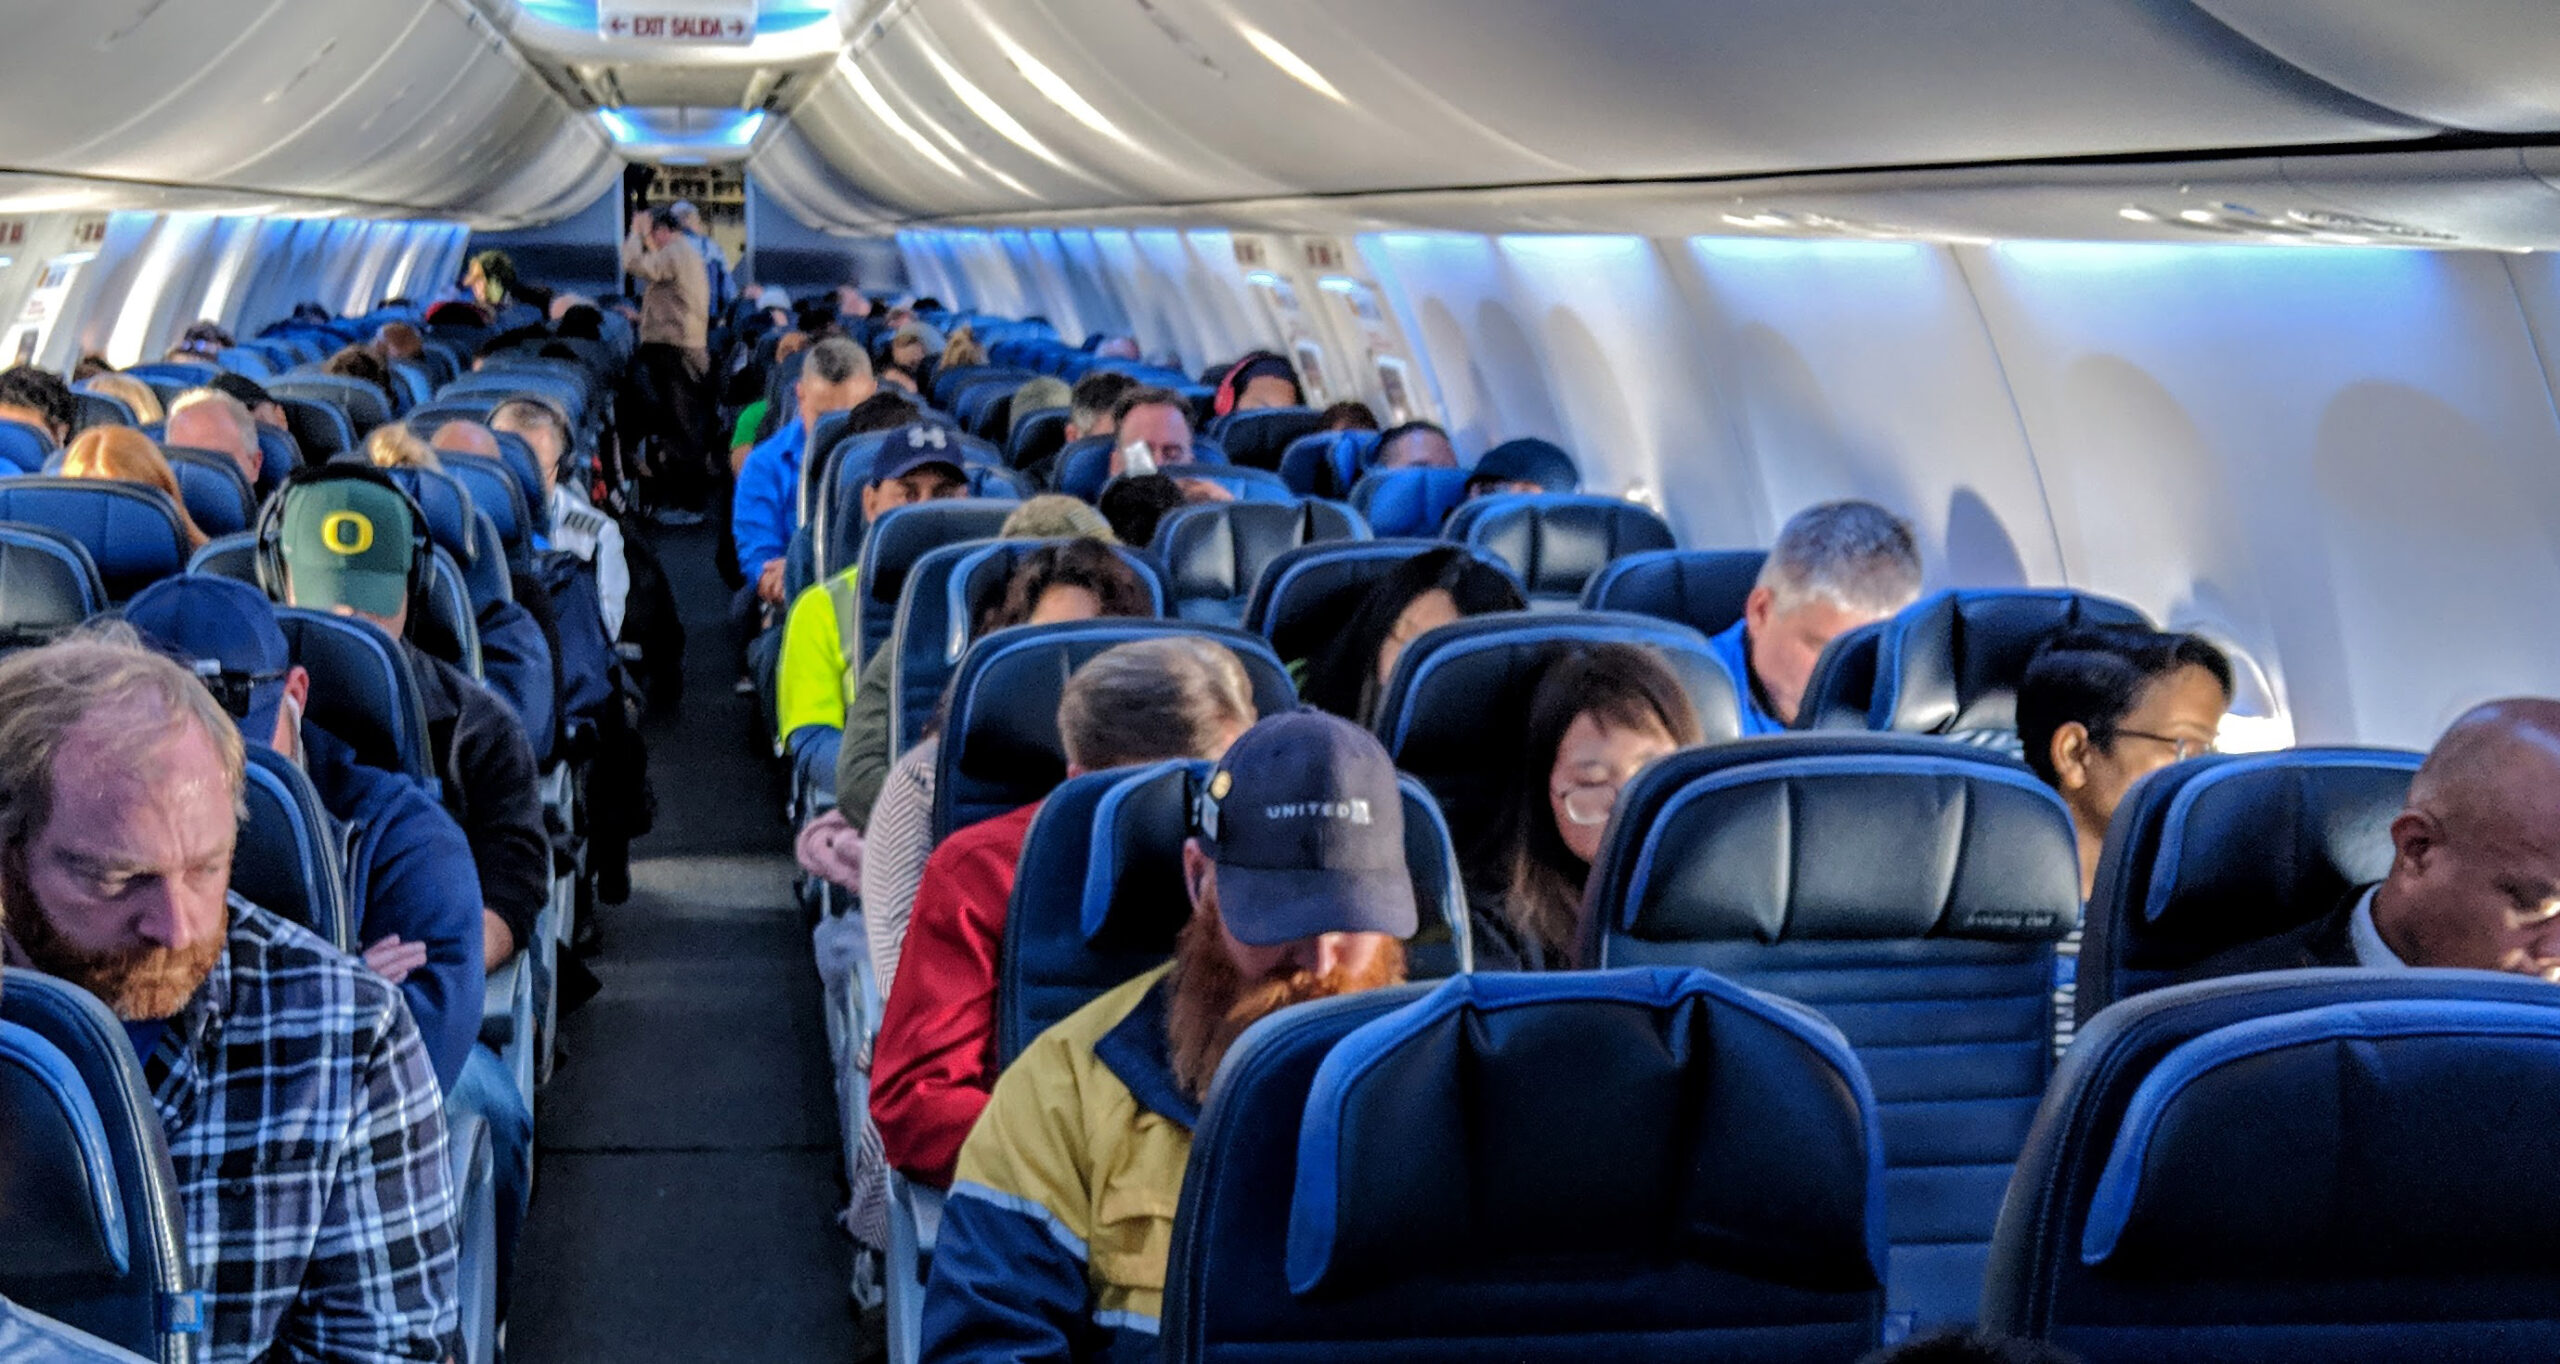 Viaggi in aereo: le cinque cose da evitare